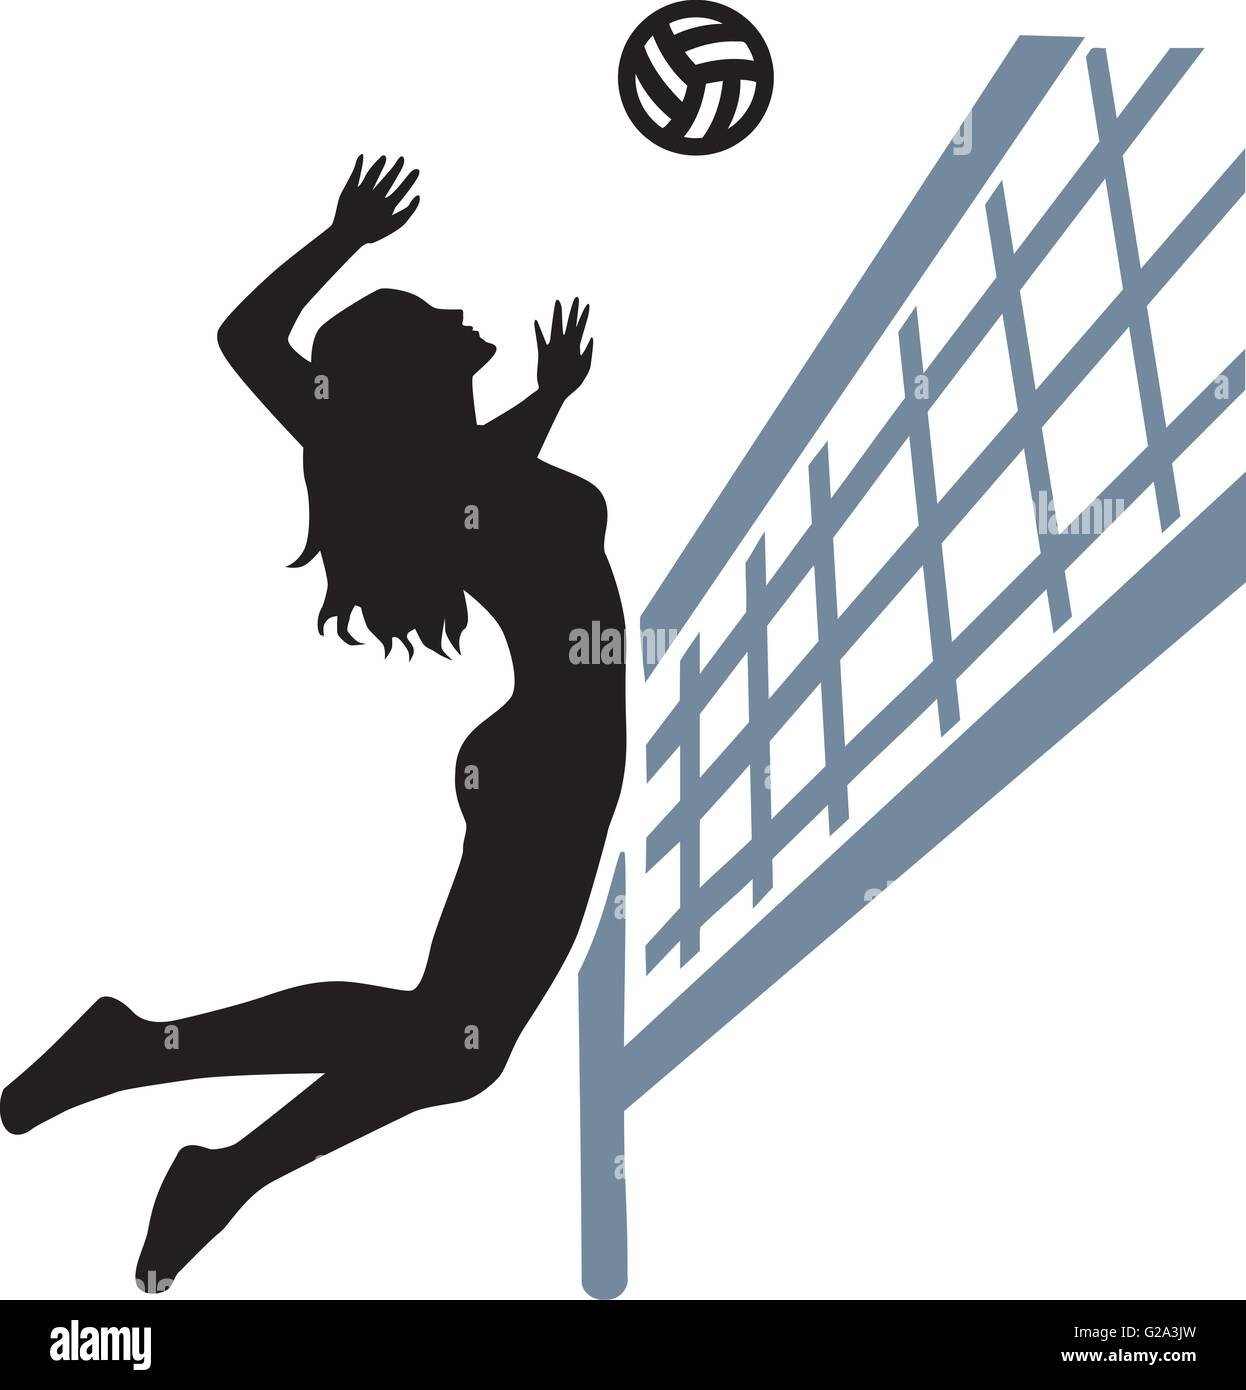 Эмблема женского волейбола